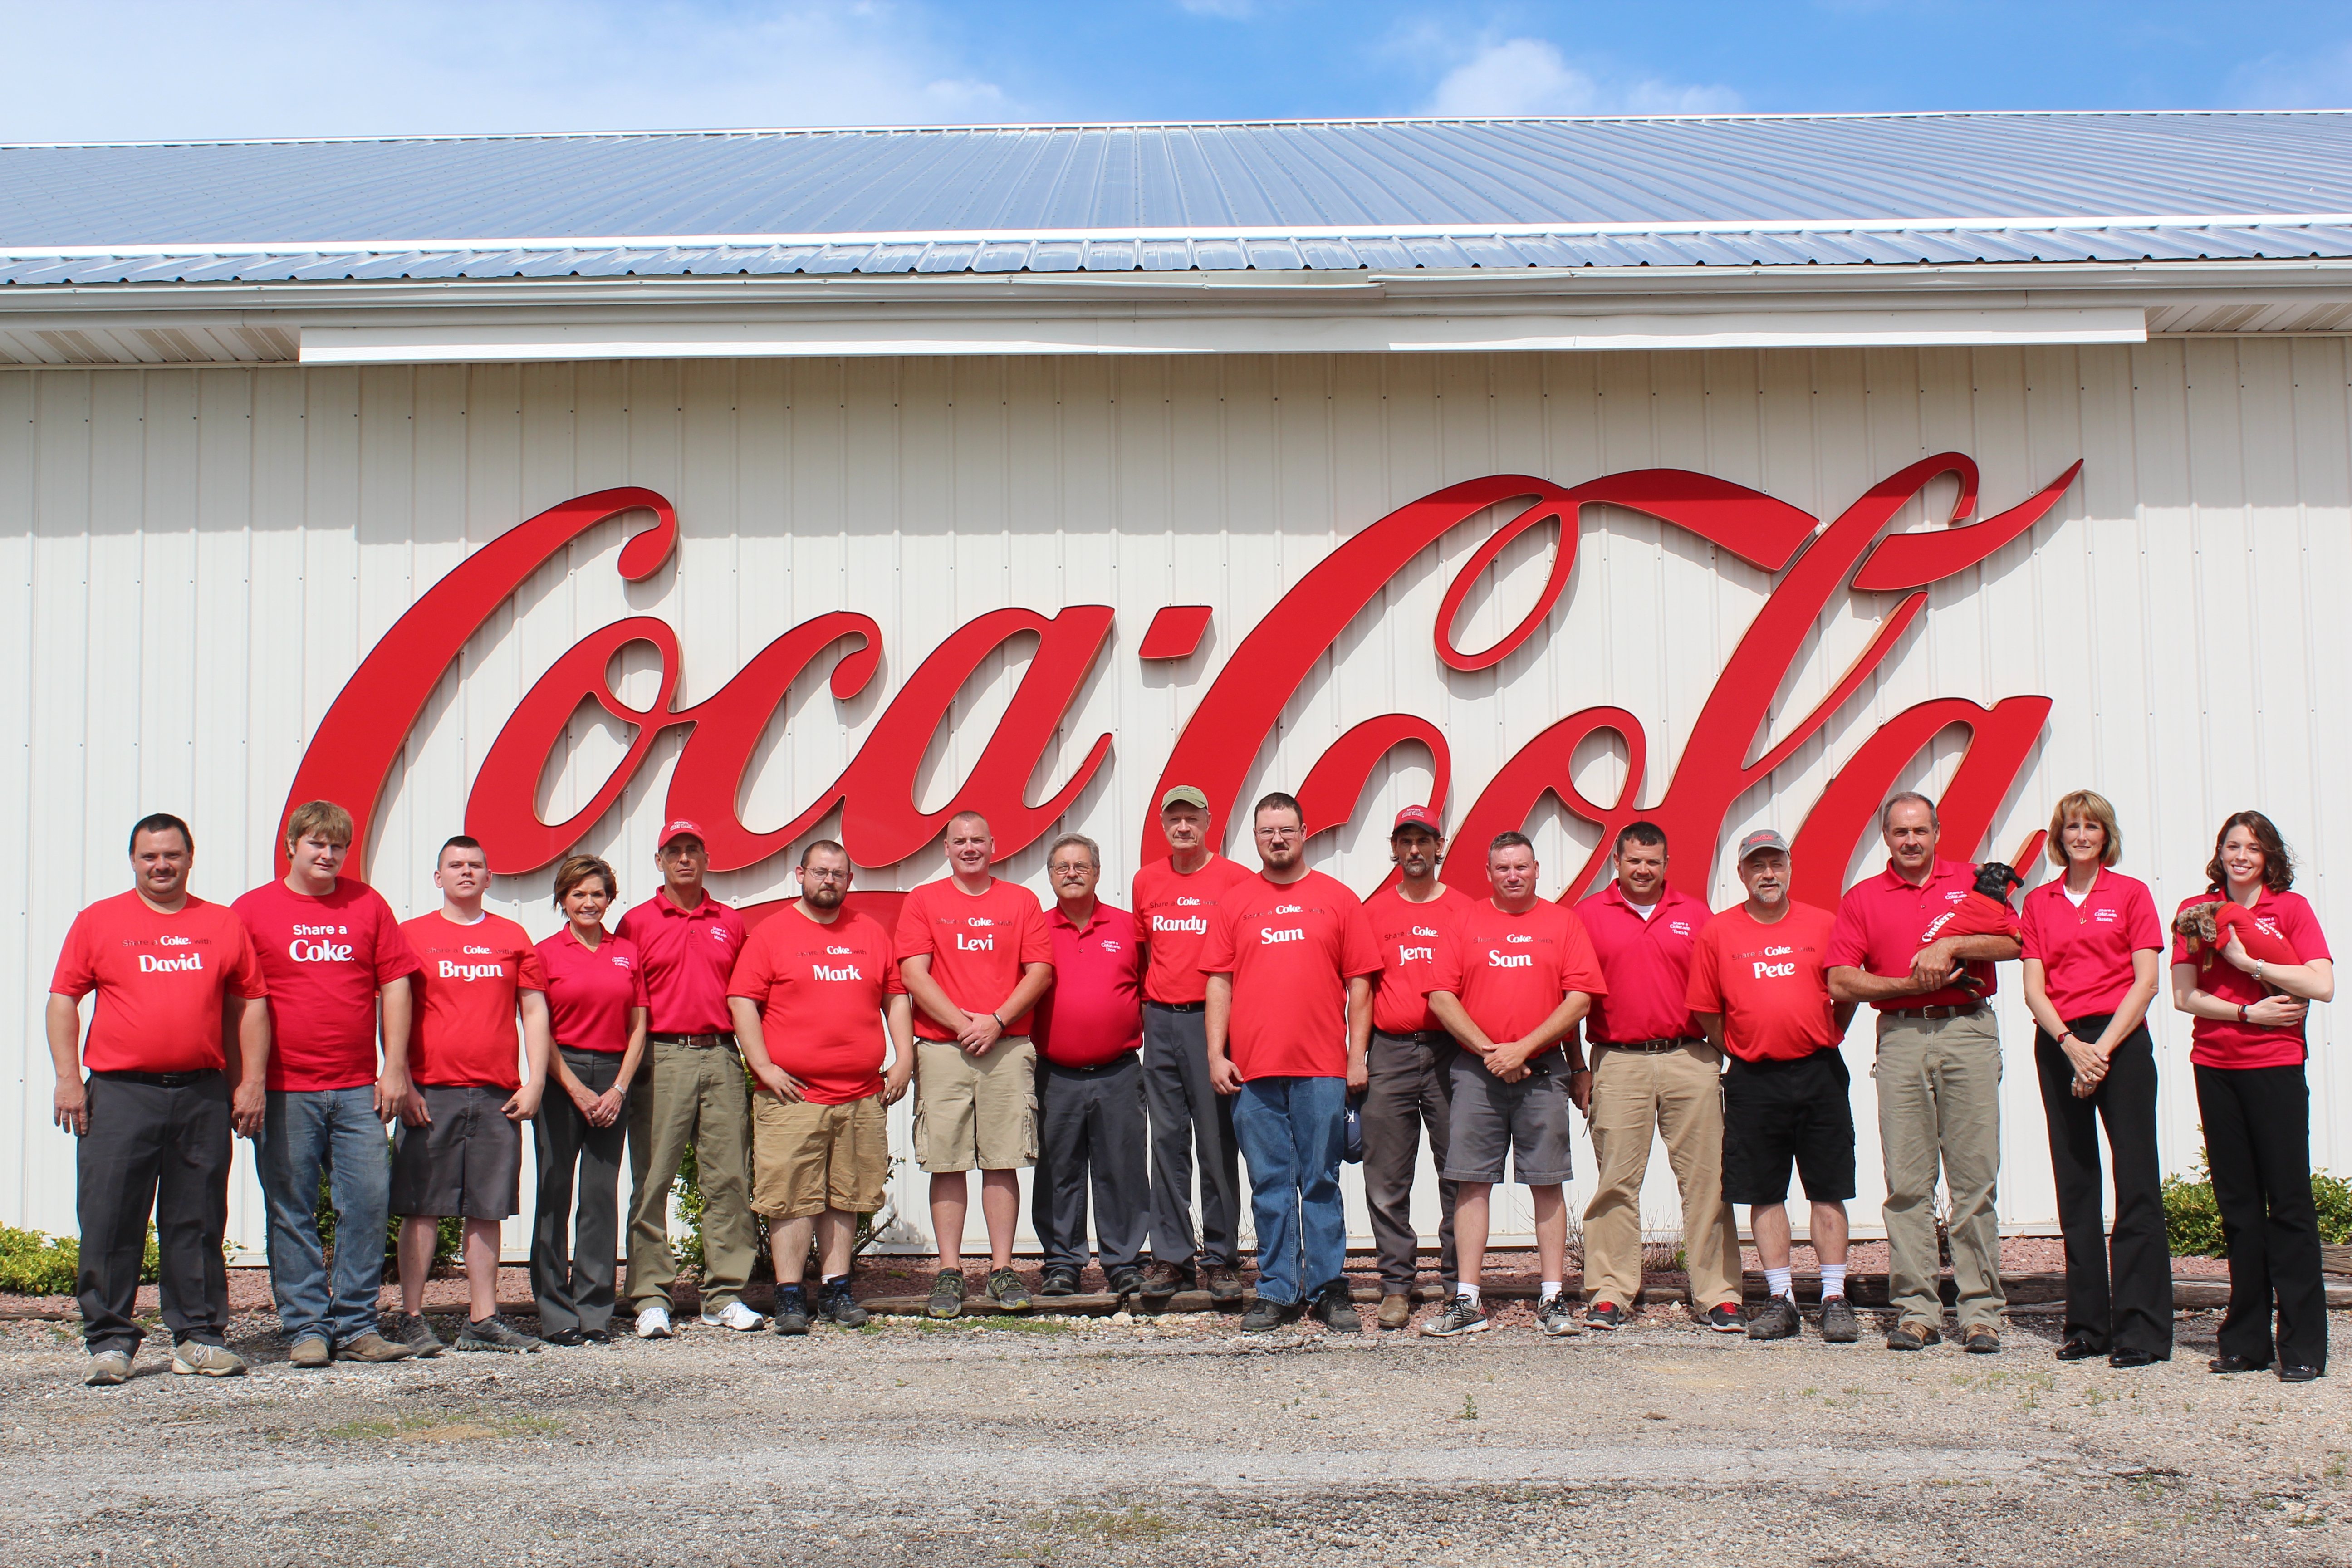 The Coca-Cola Community